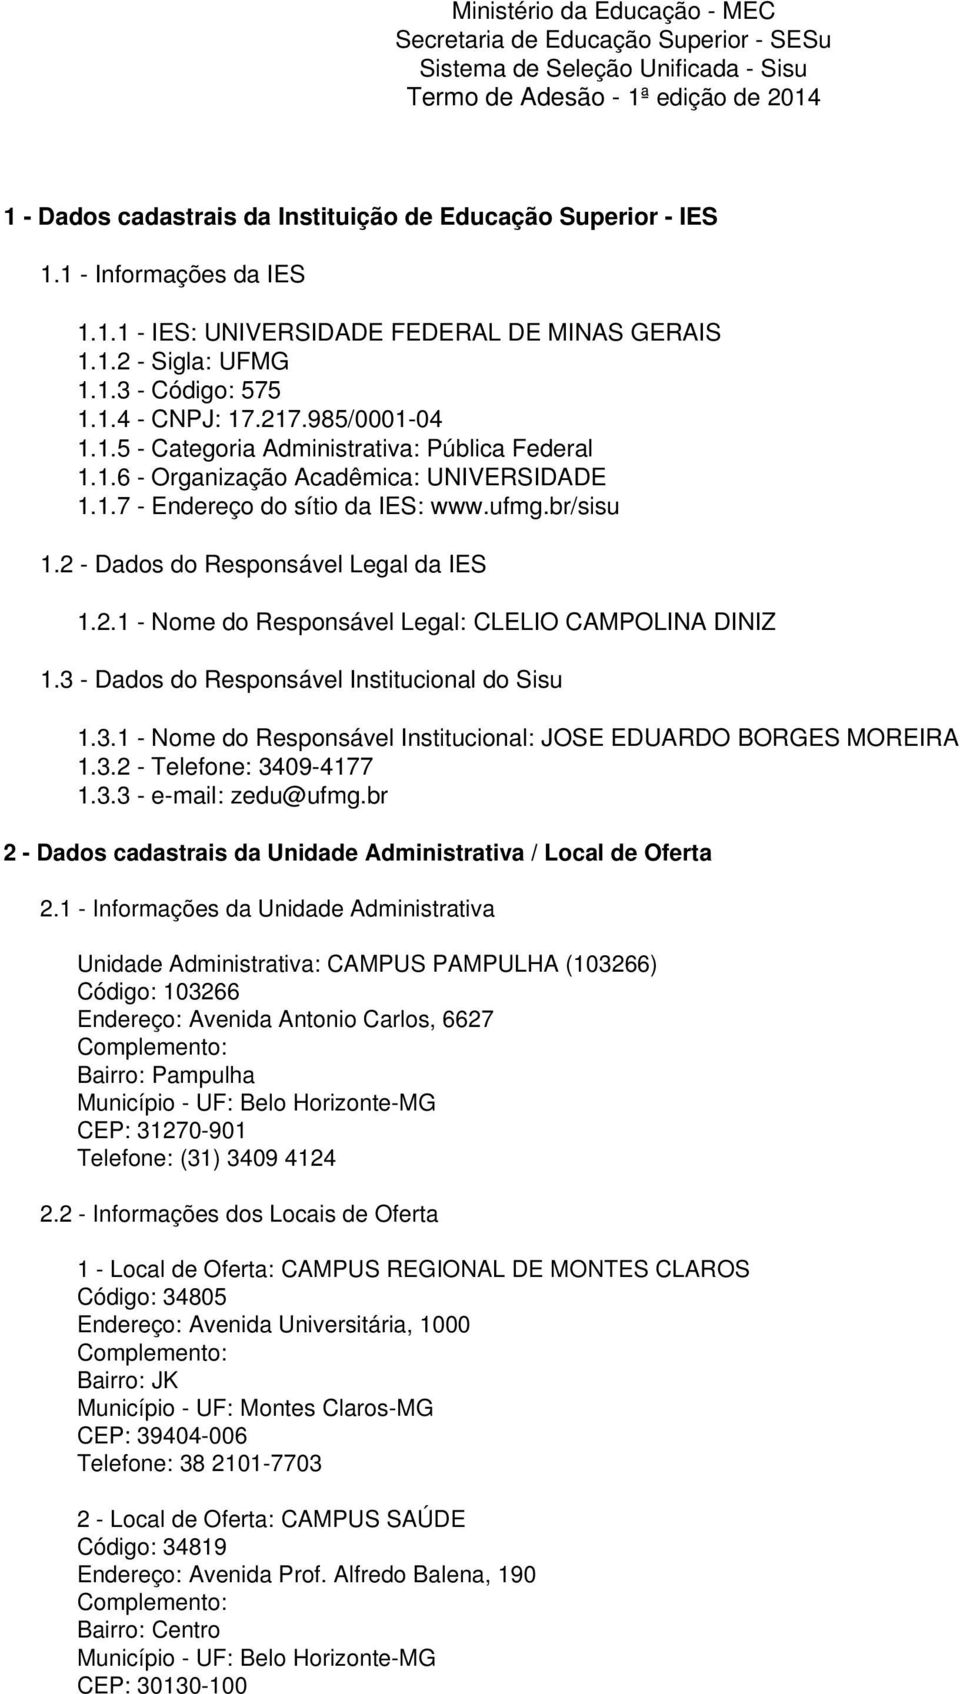 1.6 - Organização Acadêmica: UNIVERSIDADE 1.1.7 - Endereço do sítio da IES: www.ufmg.br/sisu 1.2 - Dados do Responsável Legal da IES 1.2.1 - Nome do Responsável Legal: CLELIO CAMPOLINA DINIZ 1.